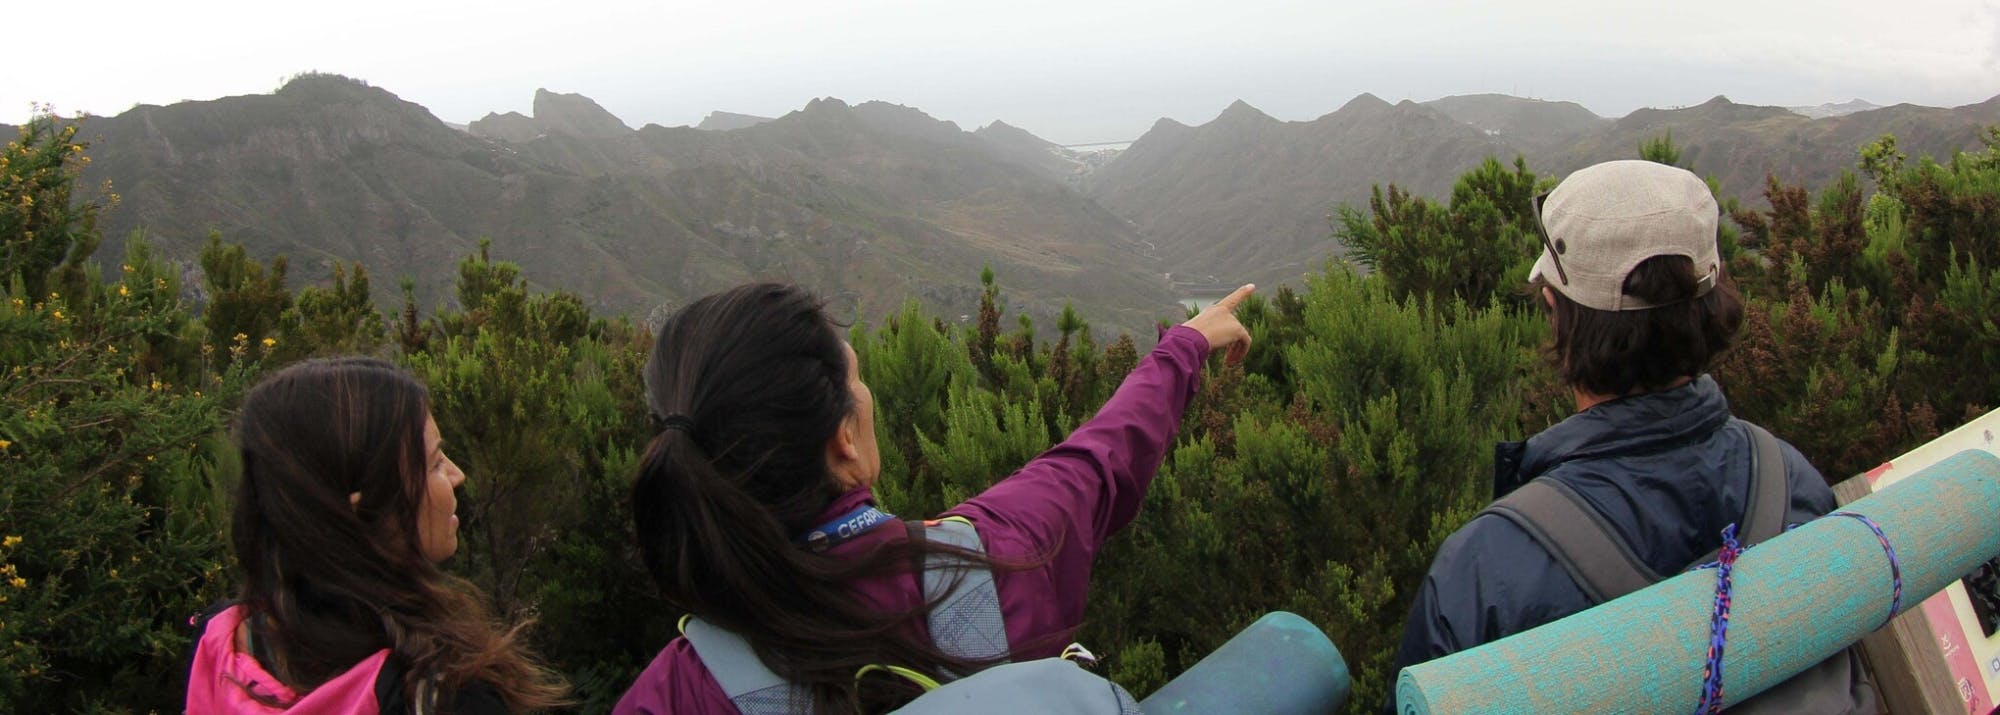 Anaga Country Park-wandeltocht op Tenerife met wellnessactiviteiten